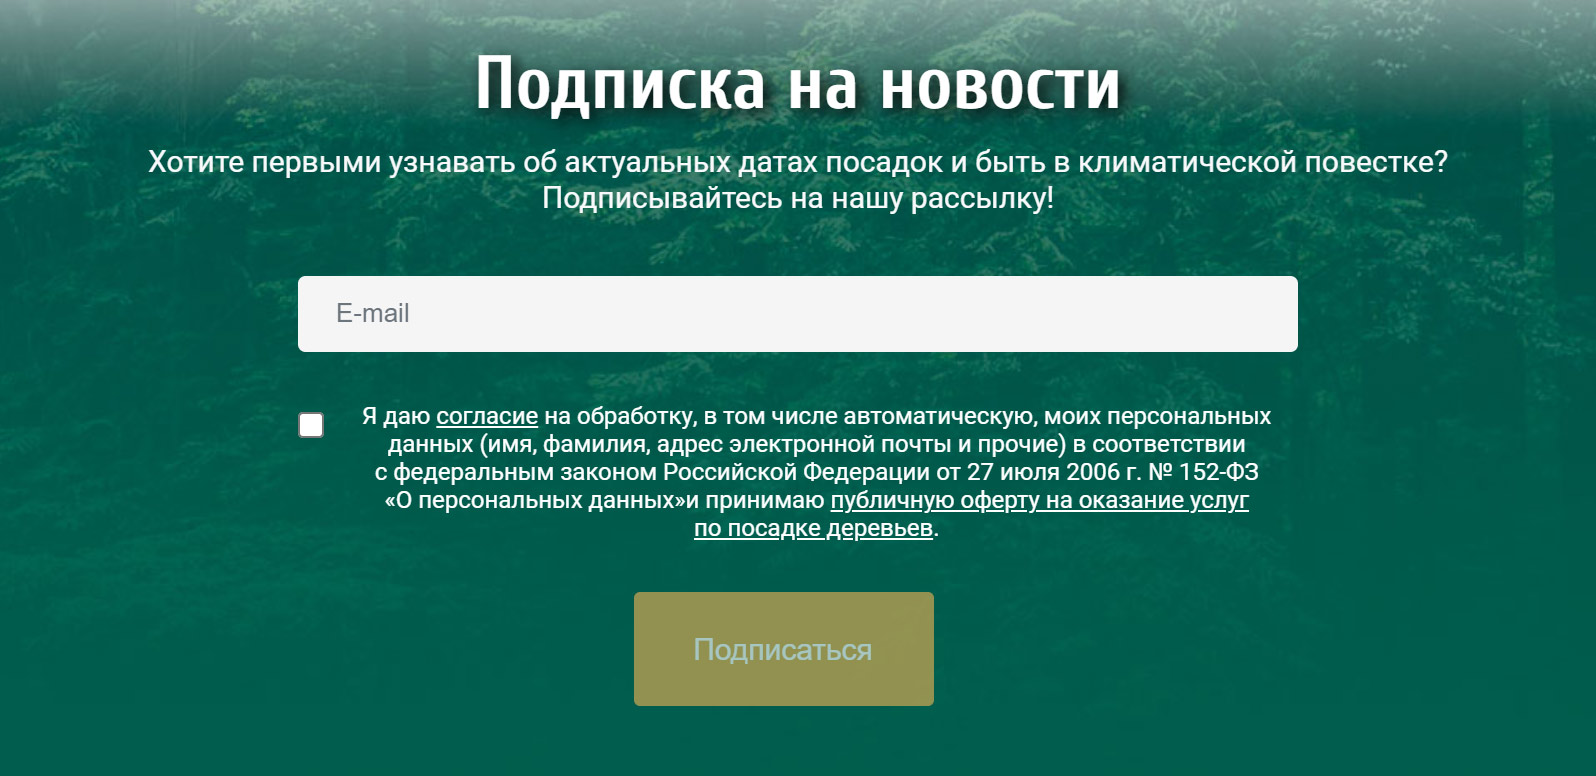 Можно подписаться на рассылку, чтобы узнавать о датах посадок. Источник: rusclimatefund.ru